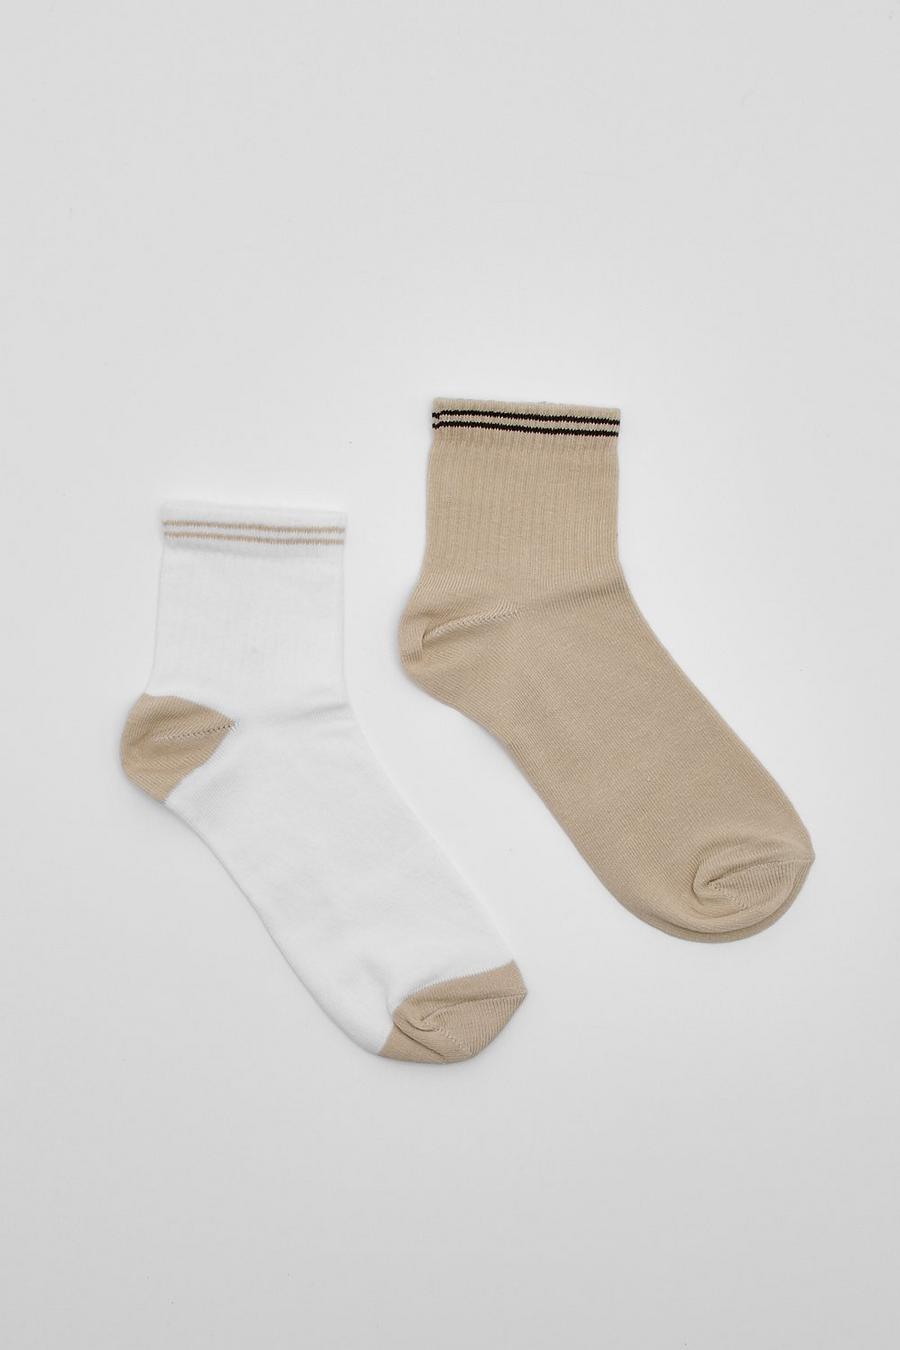 Tan marron Multi Contrast Striped Short Sport Sock 